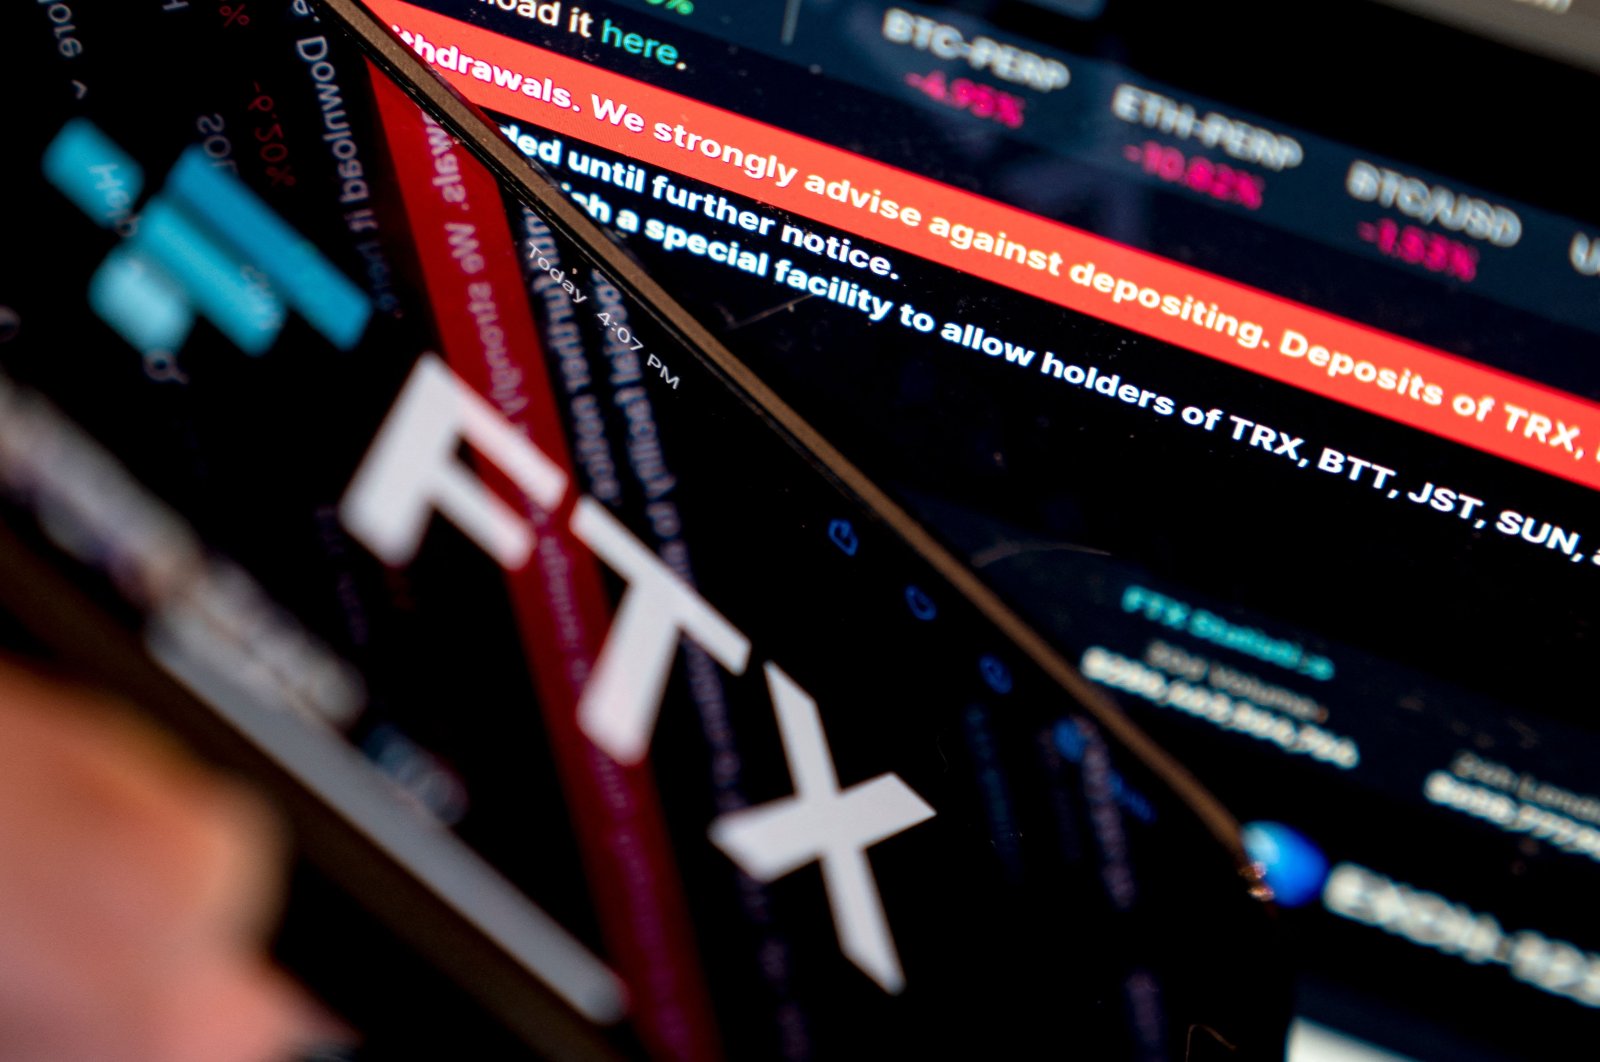 Fokus investor beralih ke Crypto.com saat regulator meneliti FTX